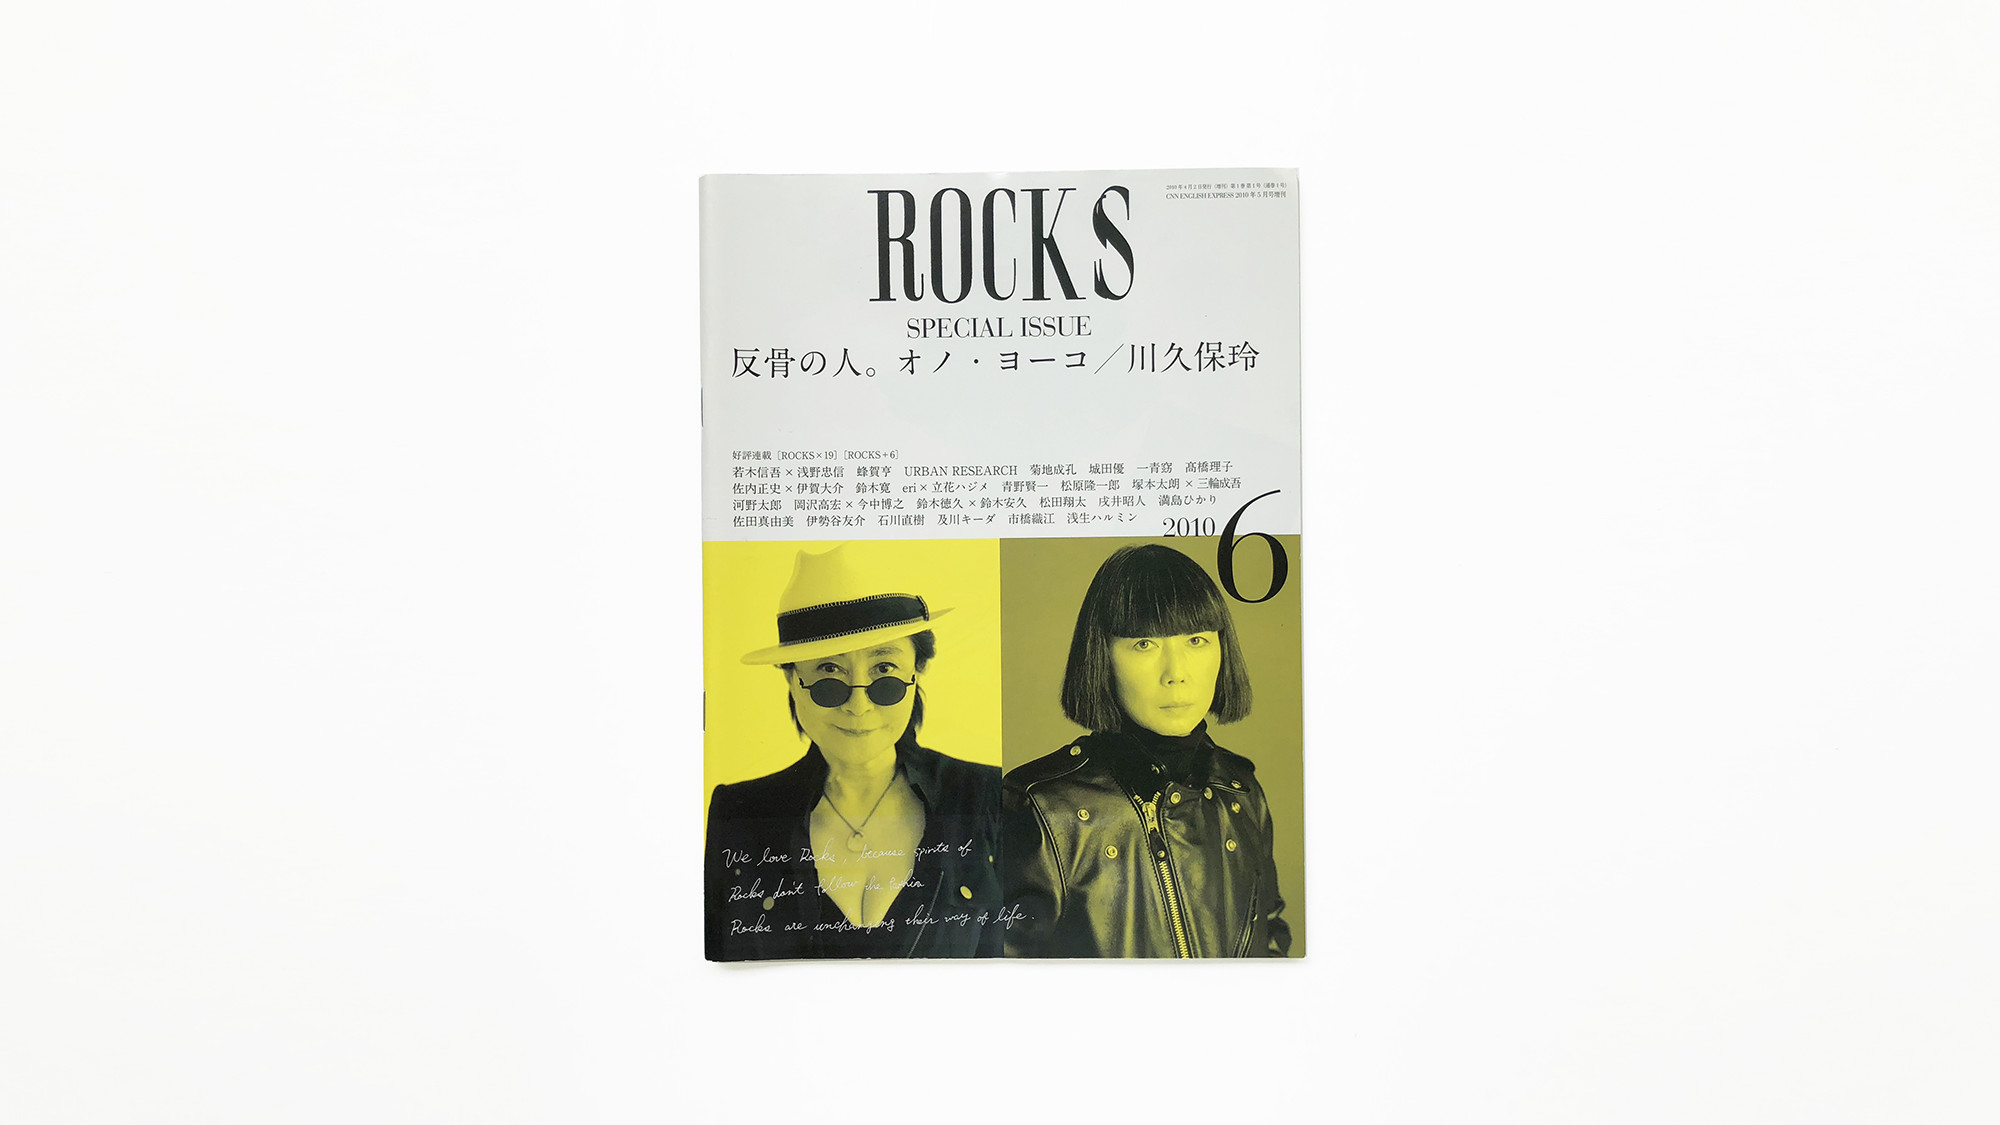 ROCKS vol.6 April / 2010